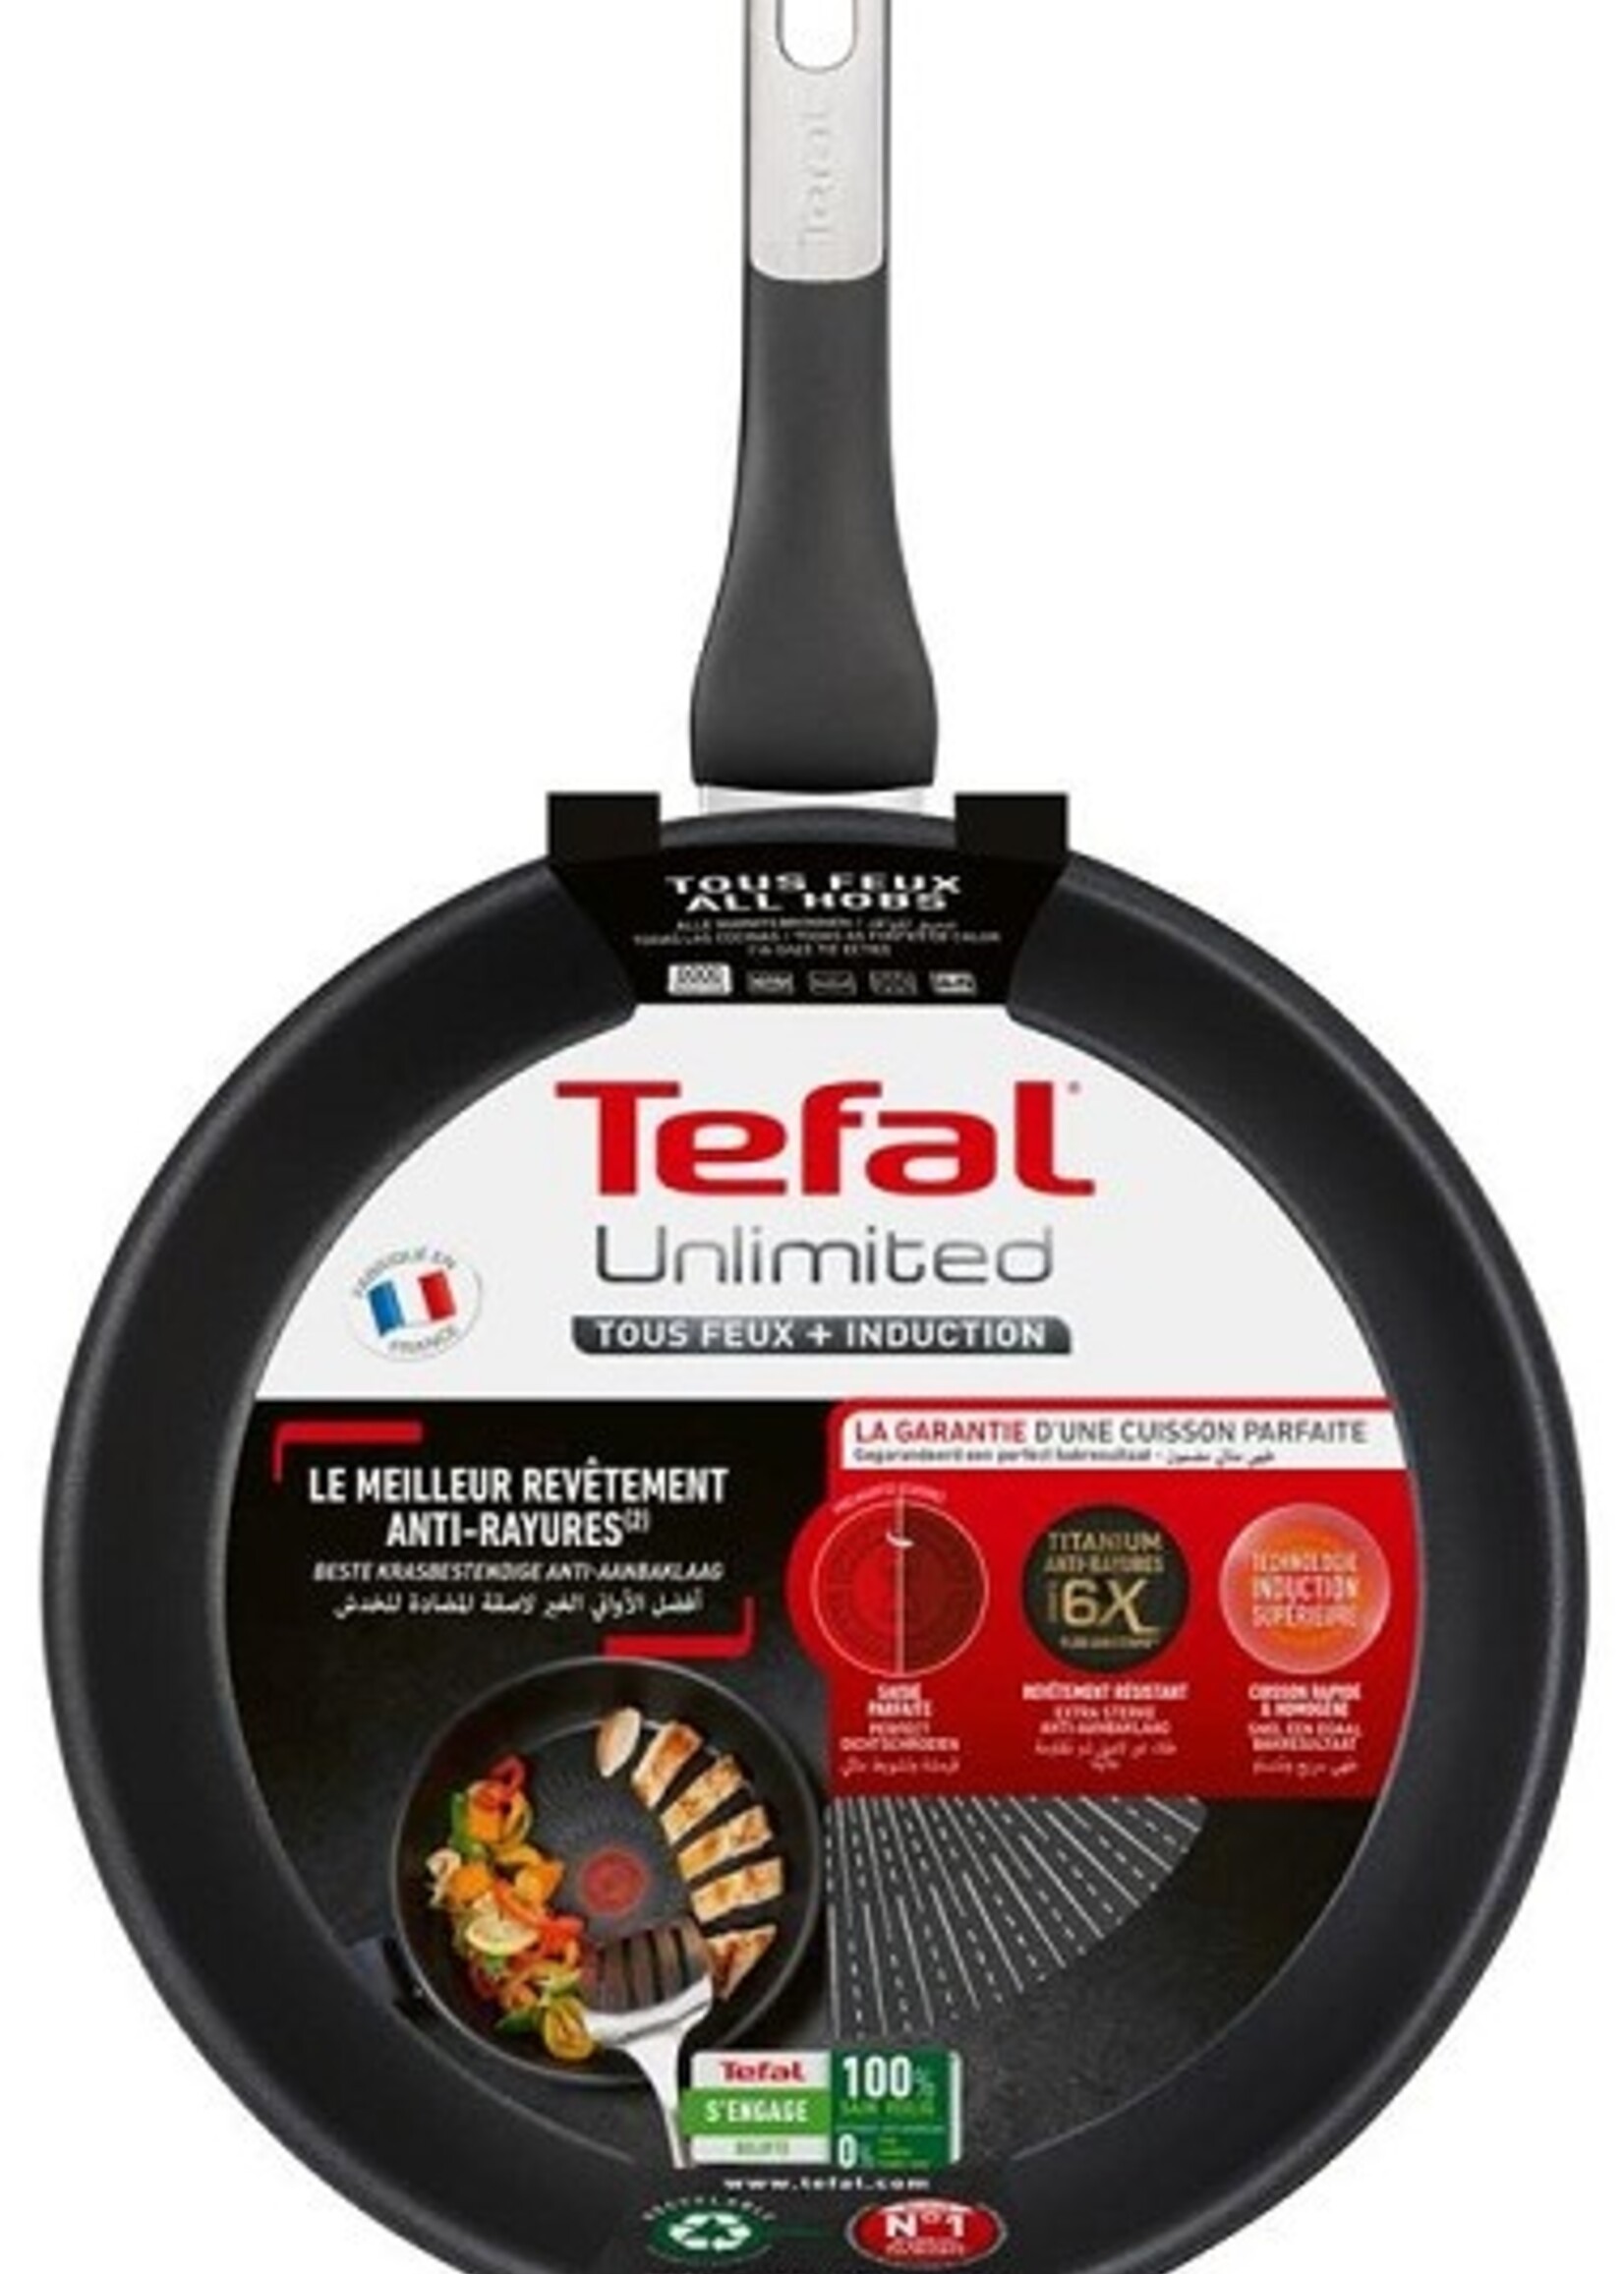 Tefal Unlimited Koekenpan 24cm van aluminium met titainium coating, geschikt voor alle warmtebronnen, inclusief inductie